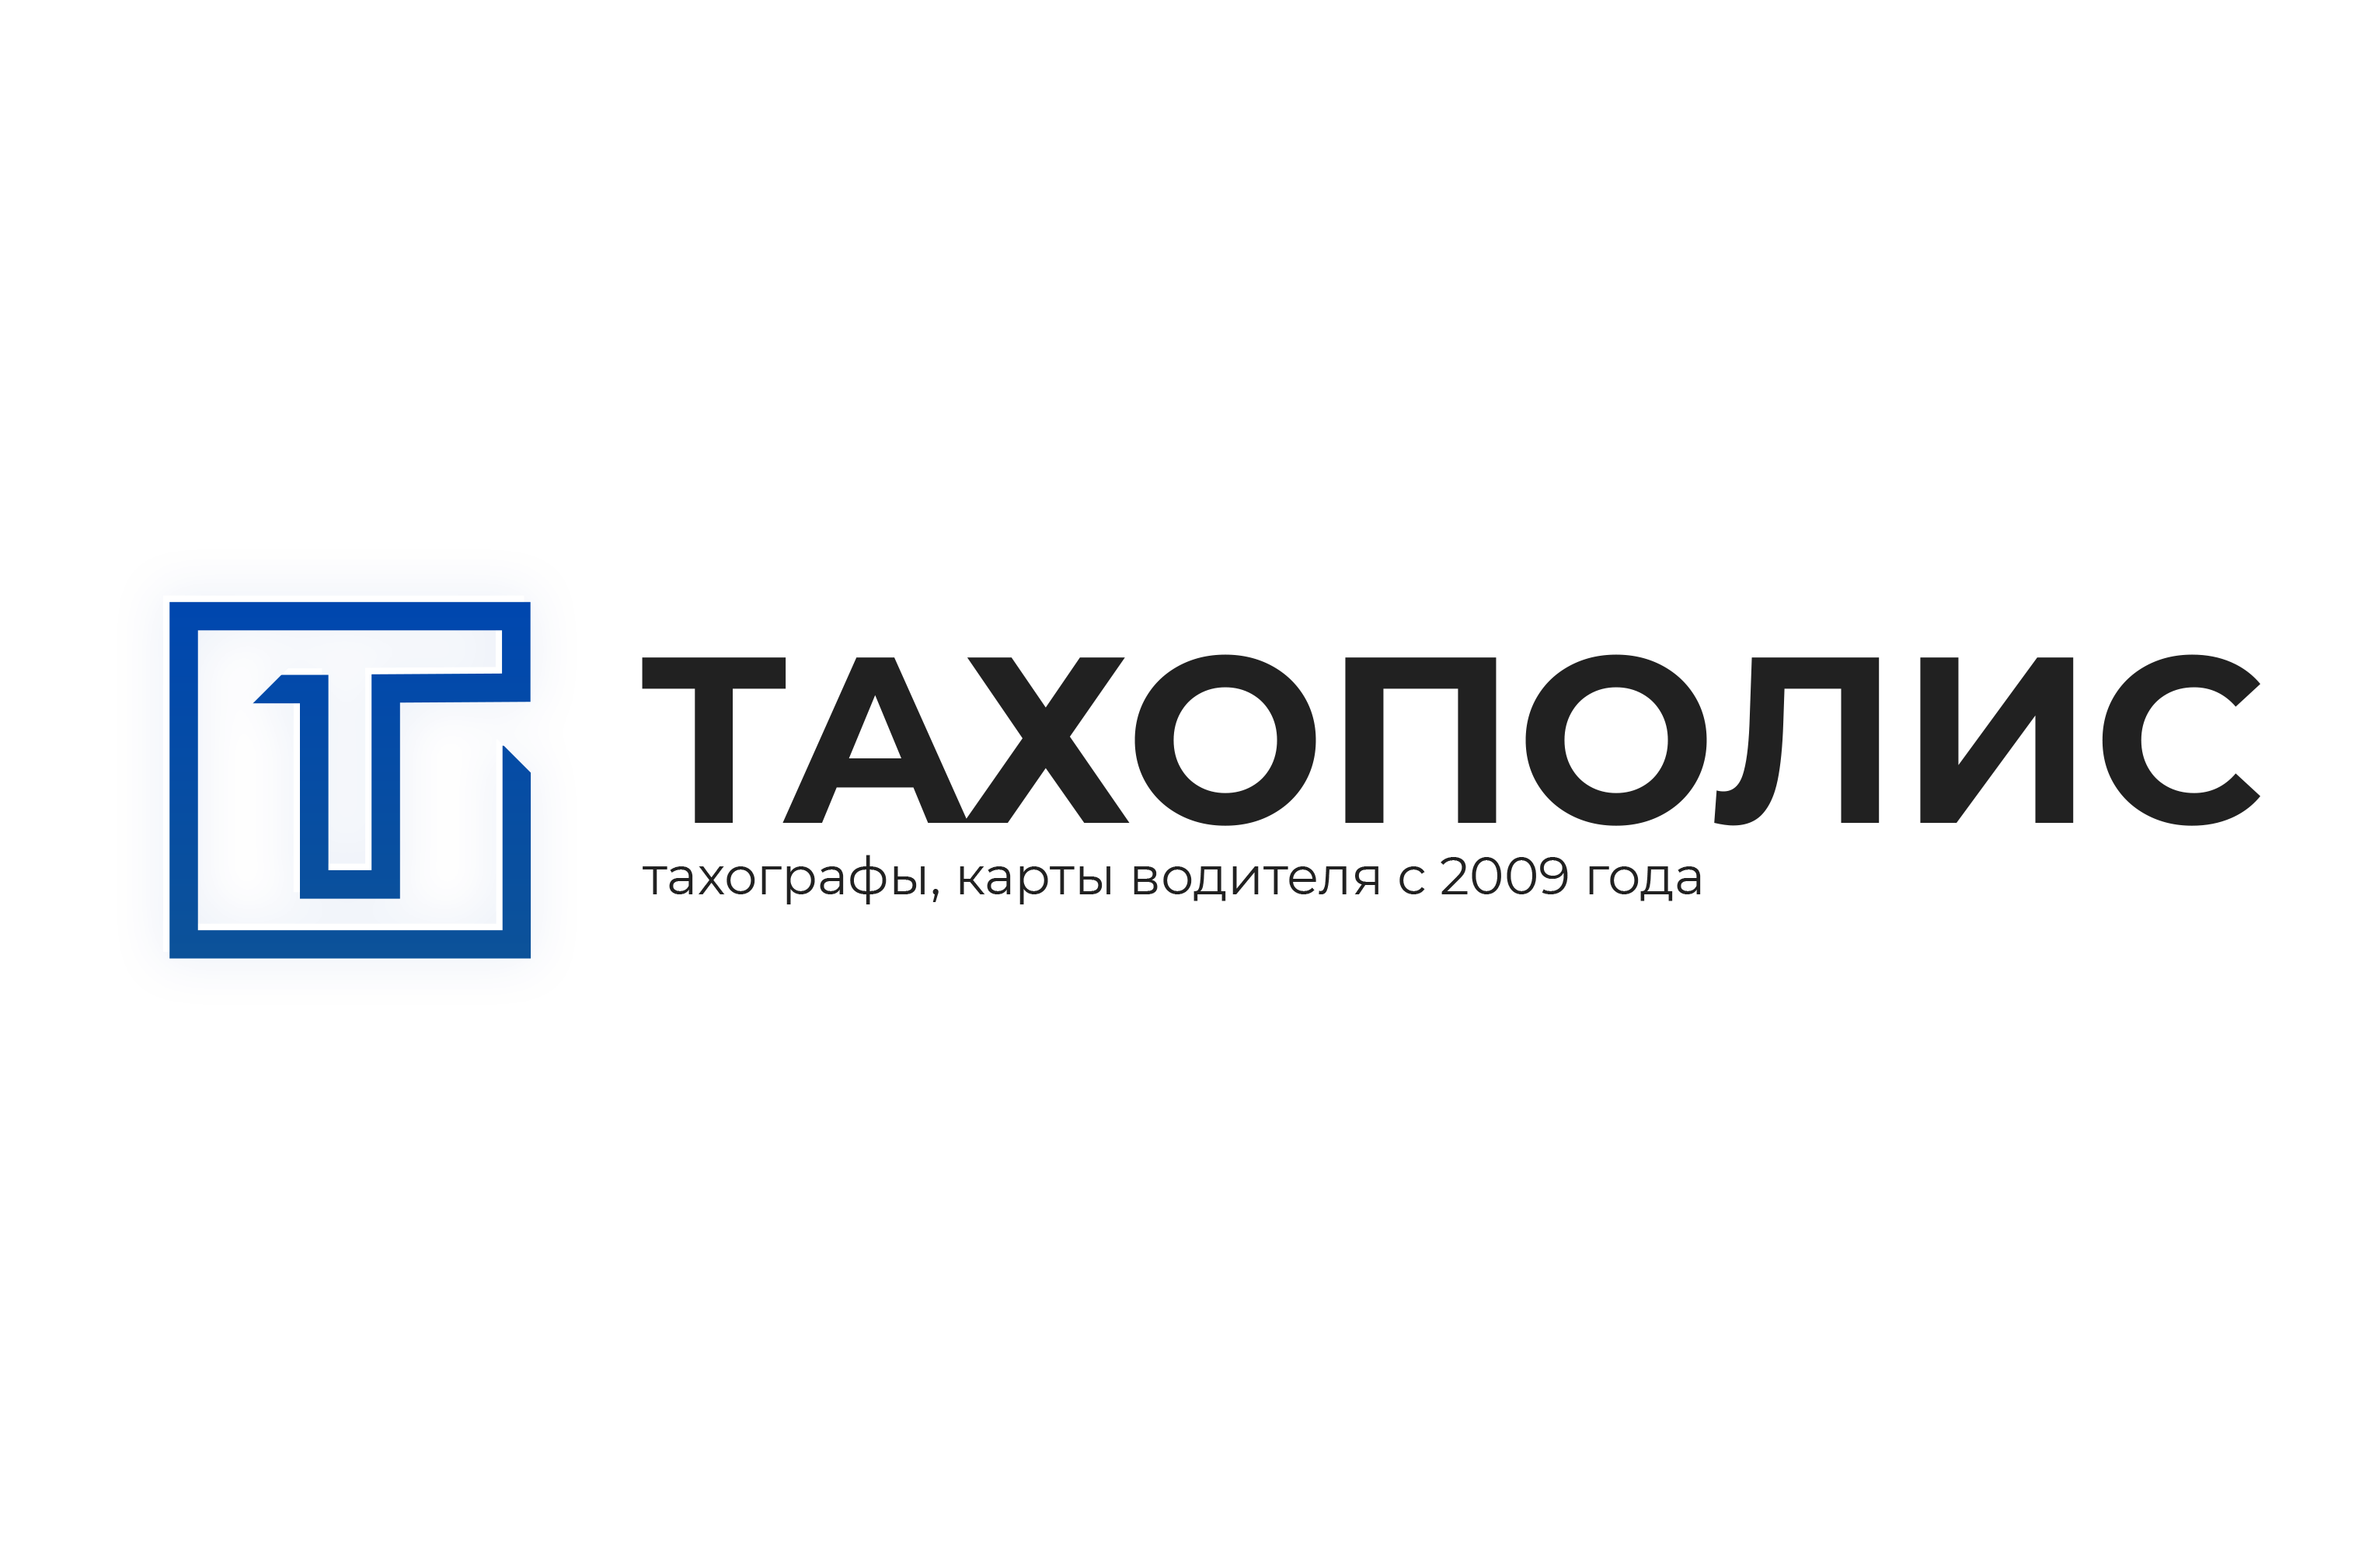 Тахополис - Тахографы и карты водителя по выгодной цене - Город Ставрополь tahopolis_logo_temp.png